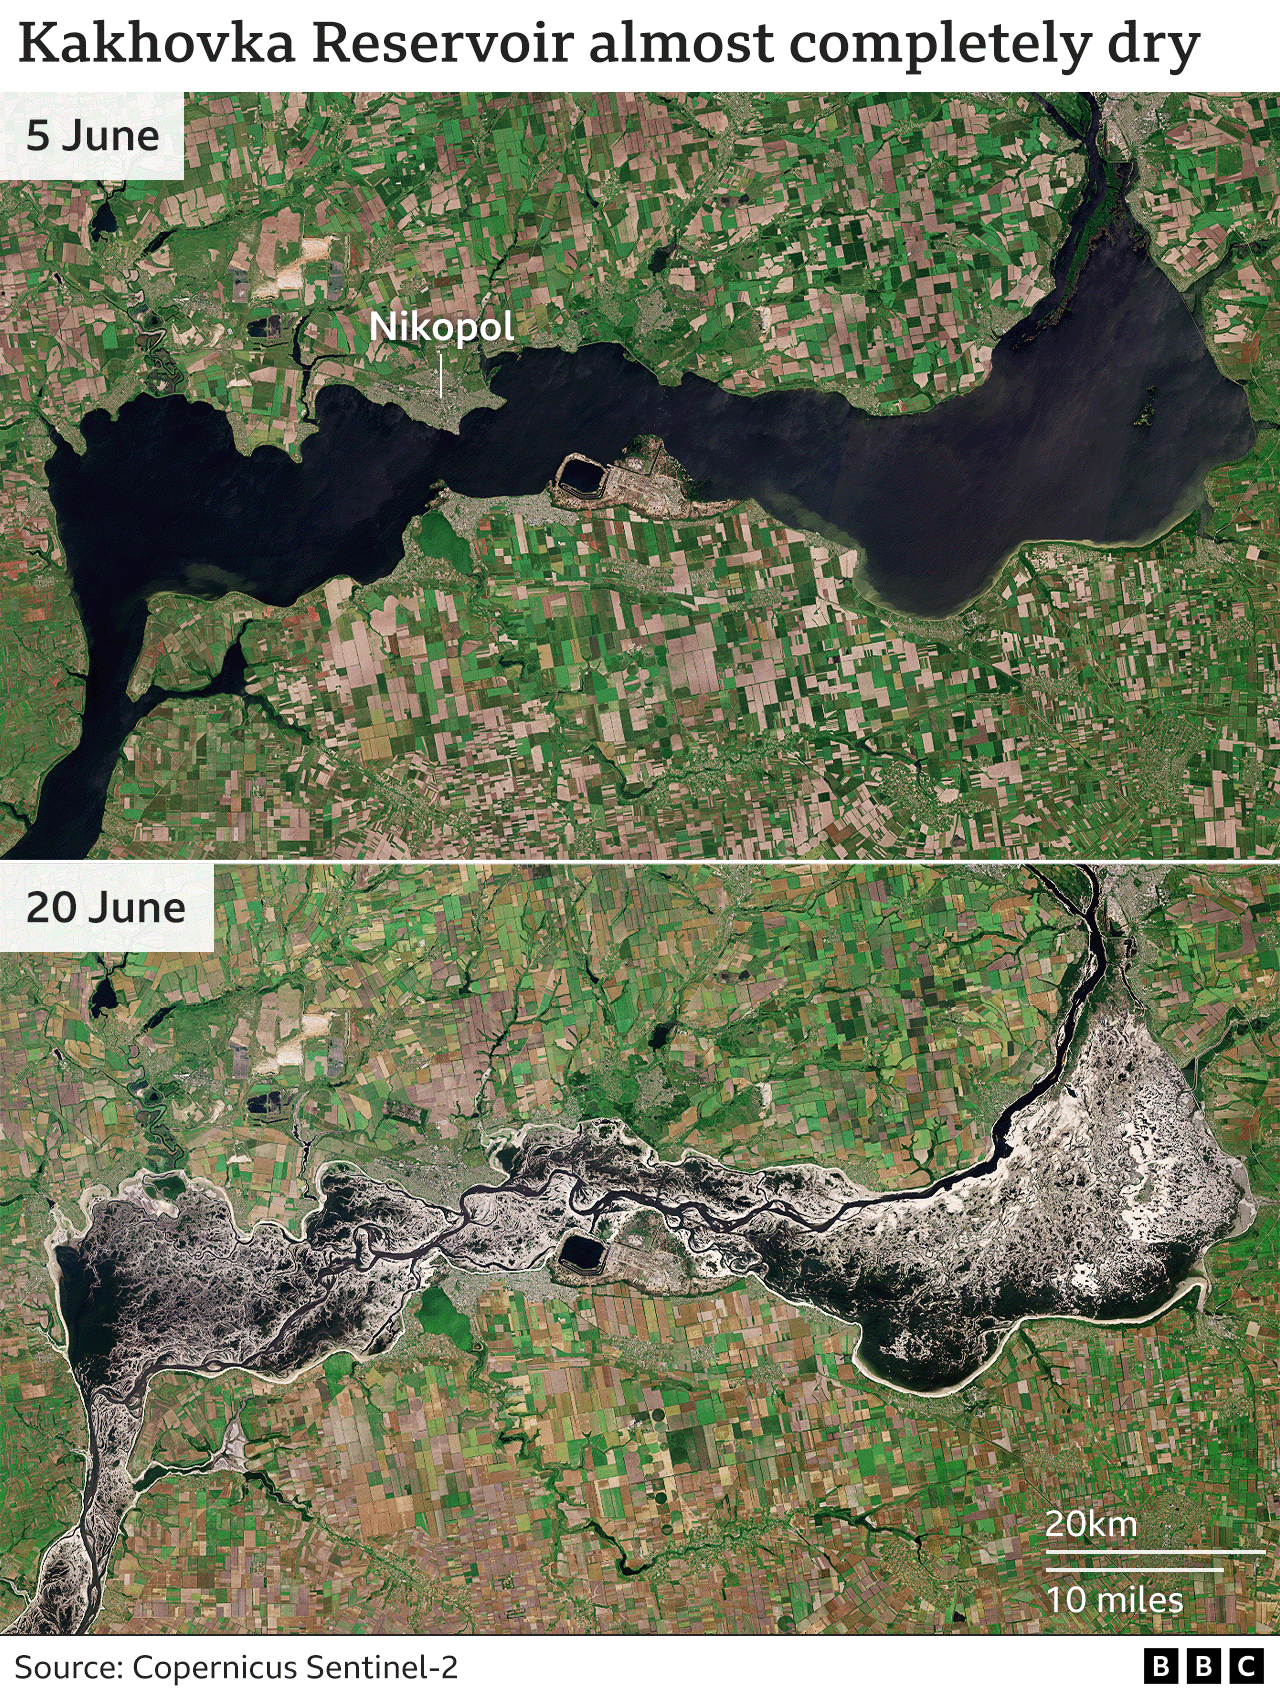 Два снимка Каховского водохранилища: одно от 5 июня, когда водохранилище было заполнено, и другое от 20 июня, когда уровень воды в водохранилище значительно упал